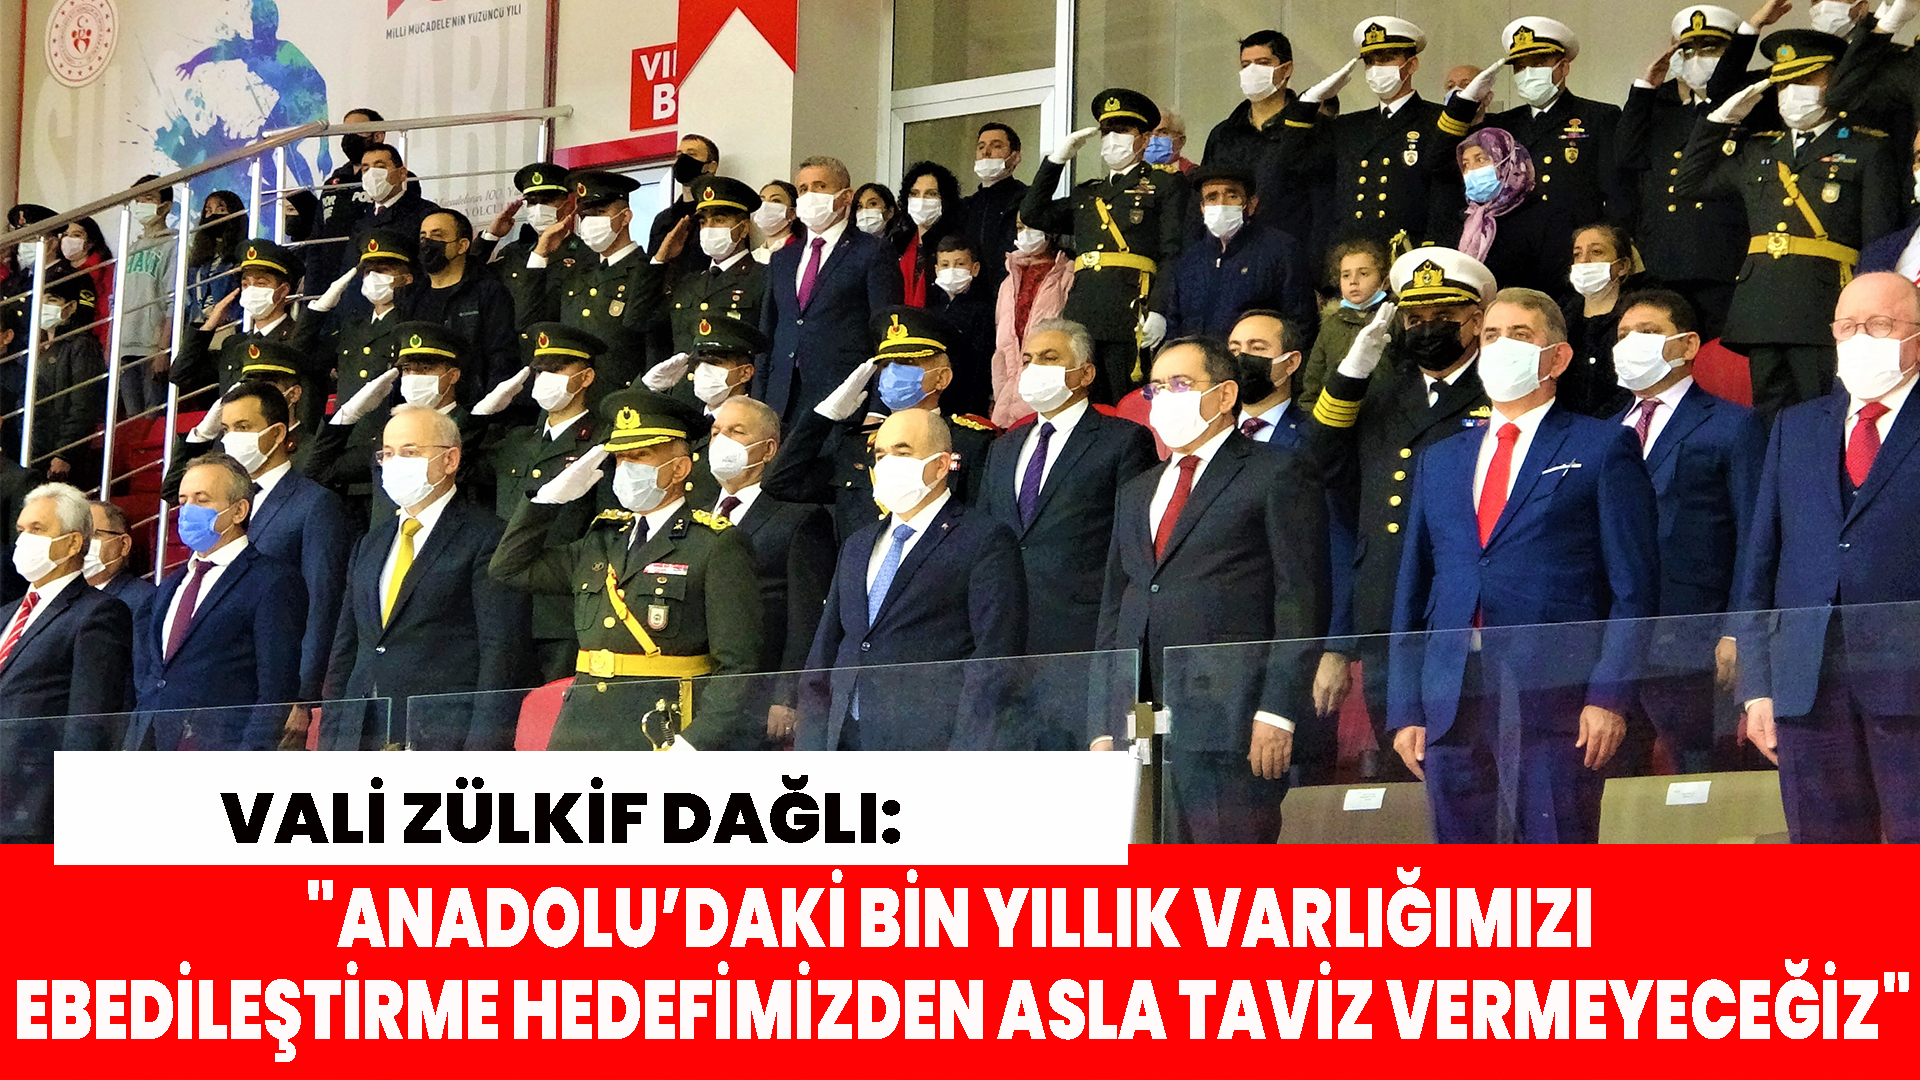 Vali Zülkif Dağlı: "Anadolu’daki bin yıllık varlığımızı ebedileştirme hedefimizden asla taviz vermeyeceğiz"